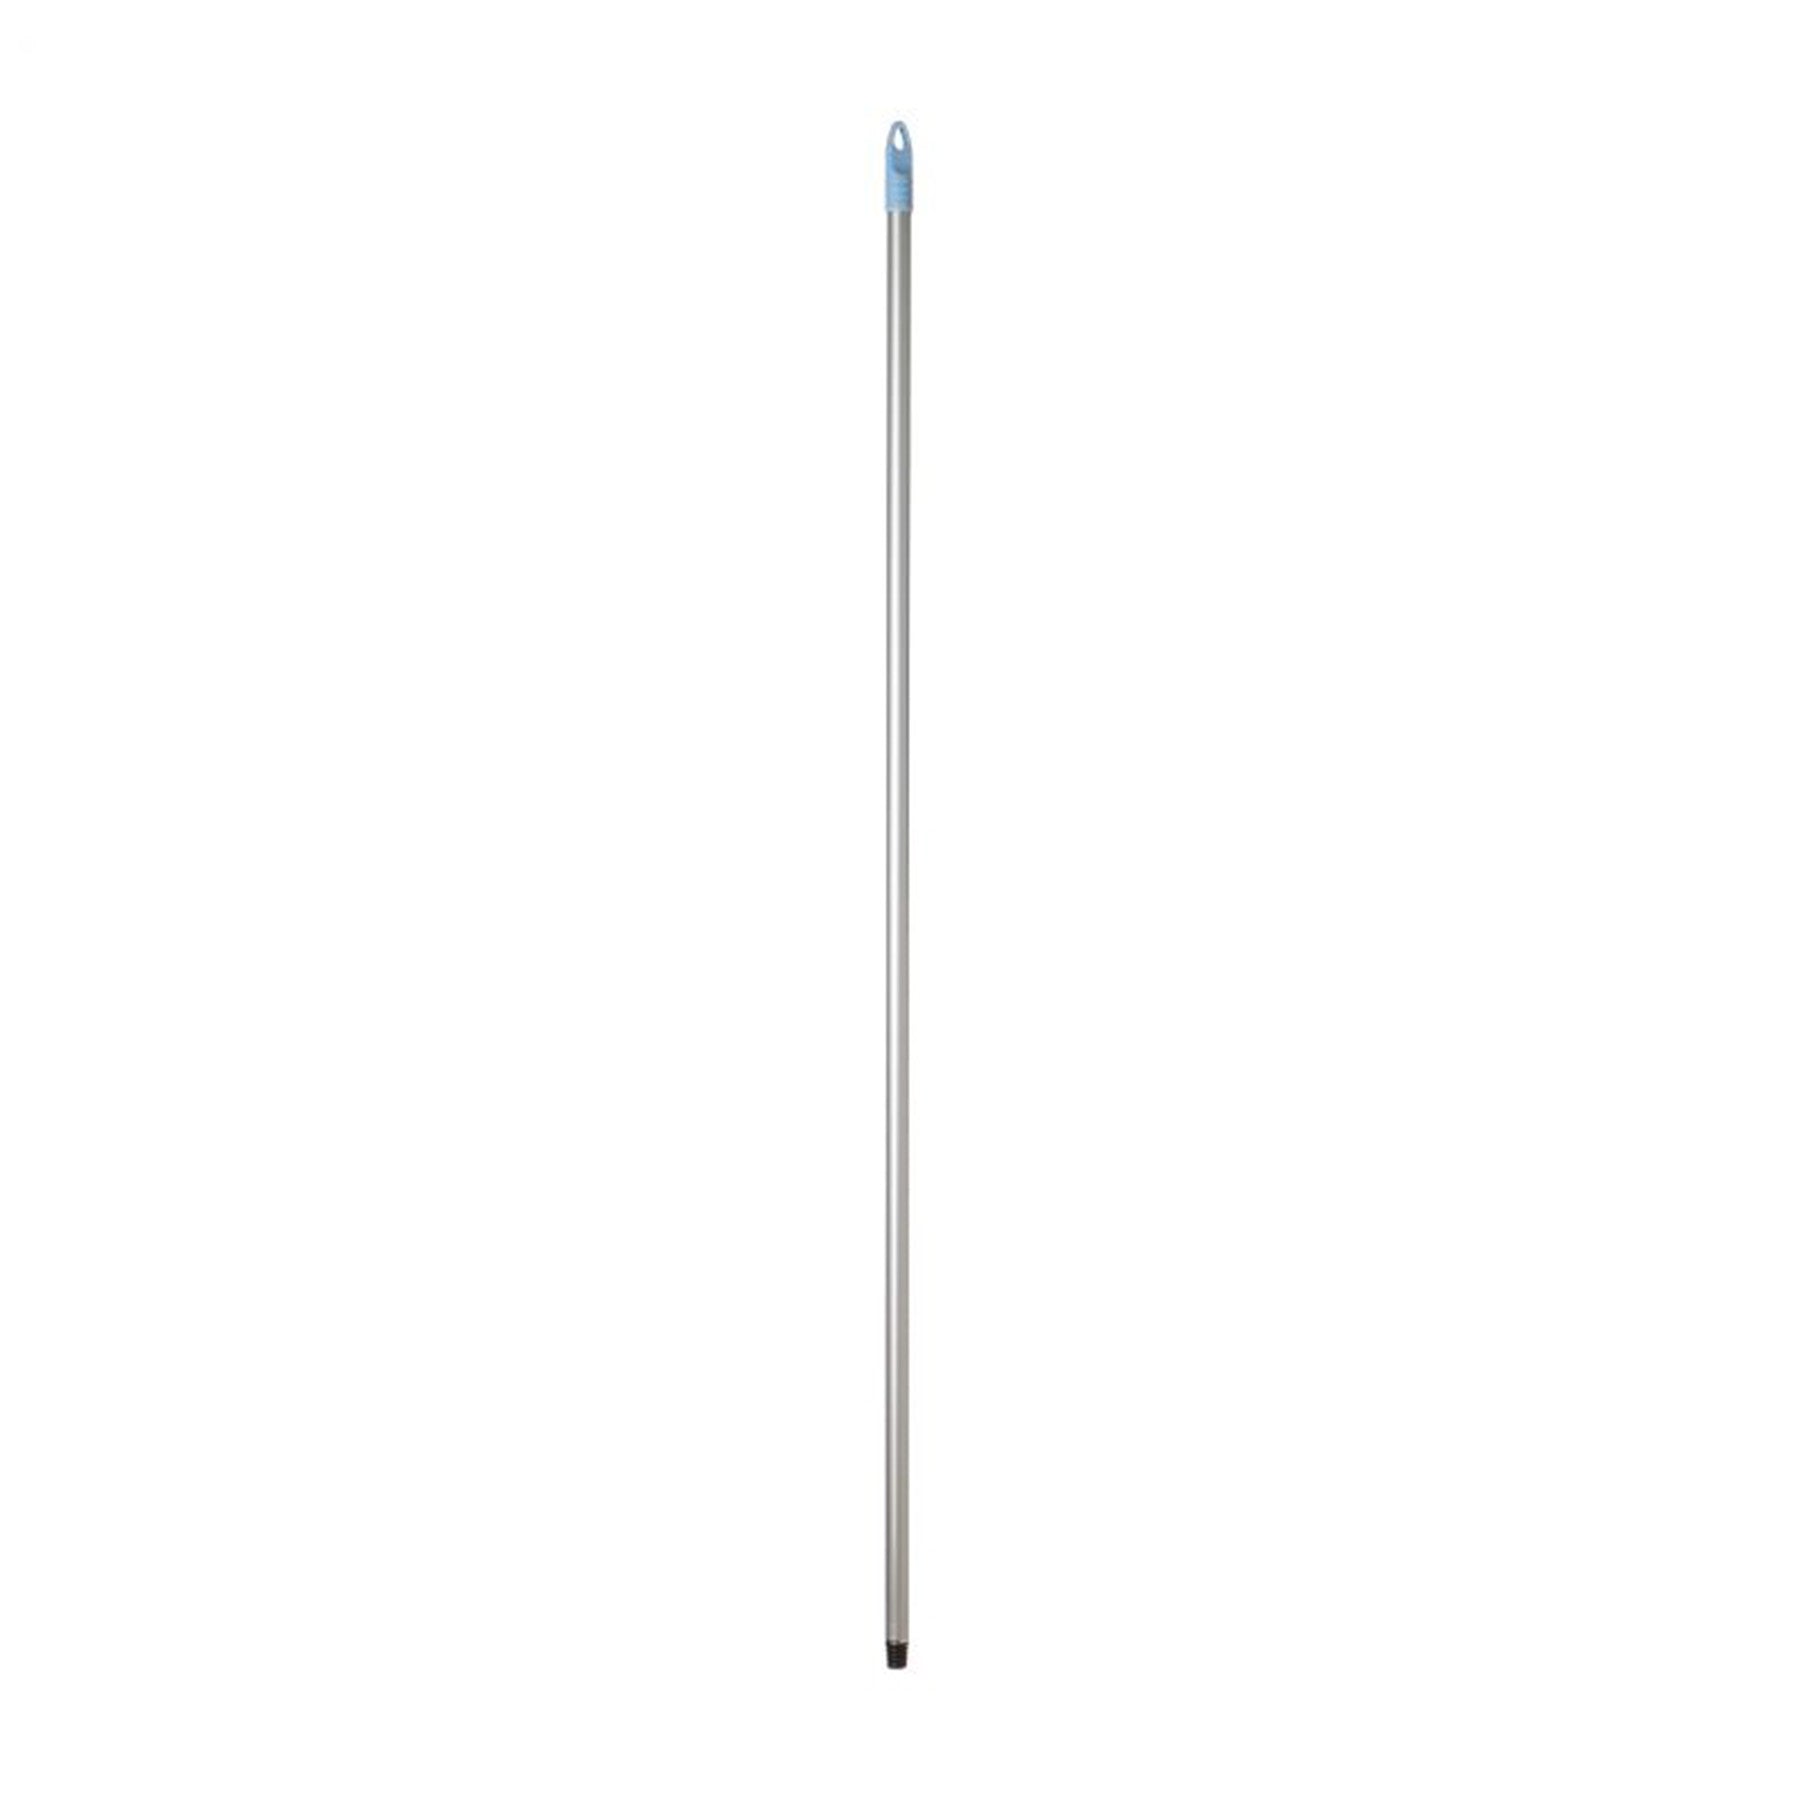 Mop stick - blue